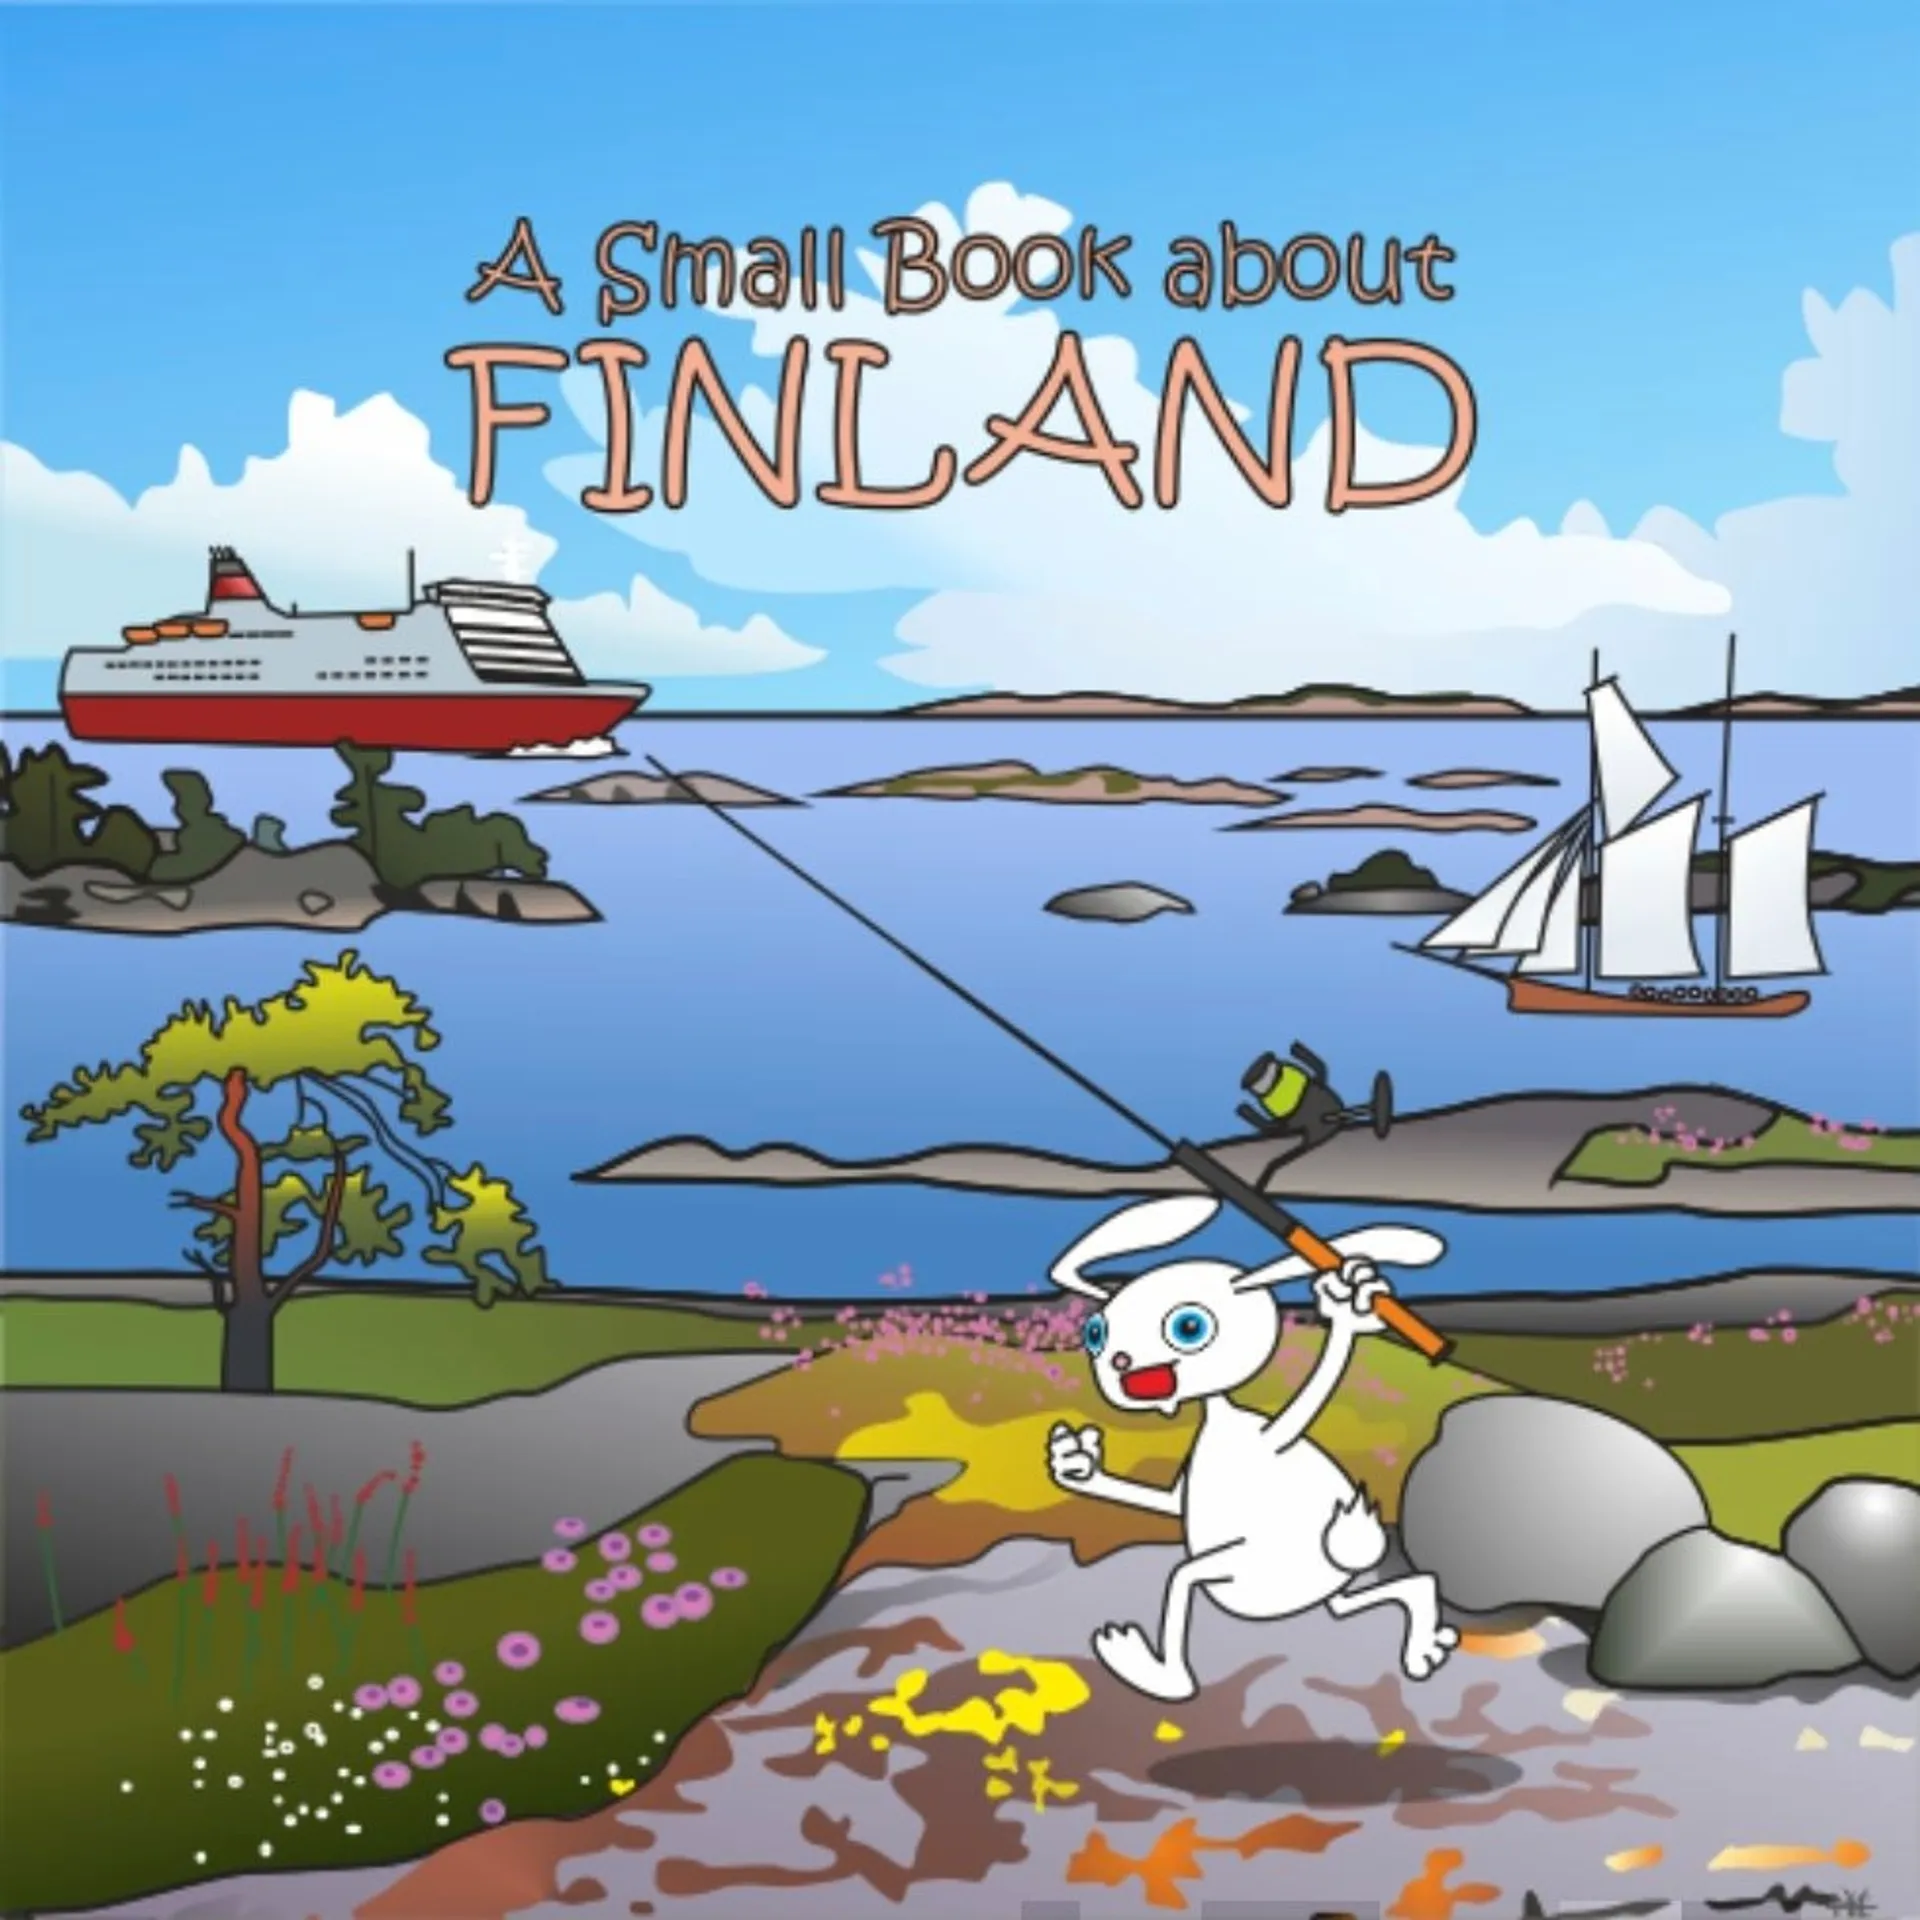 Yli-Erkkilä, A Small Book about Finland